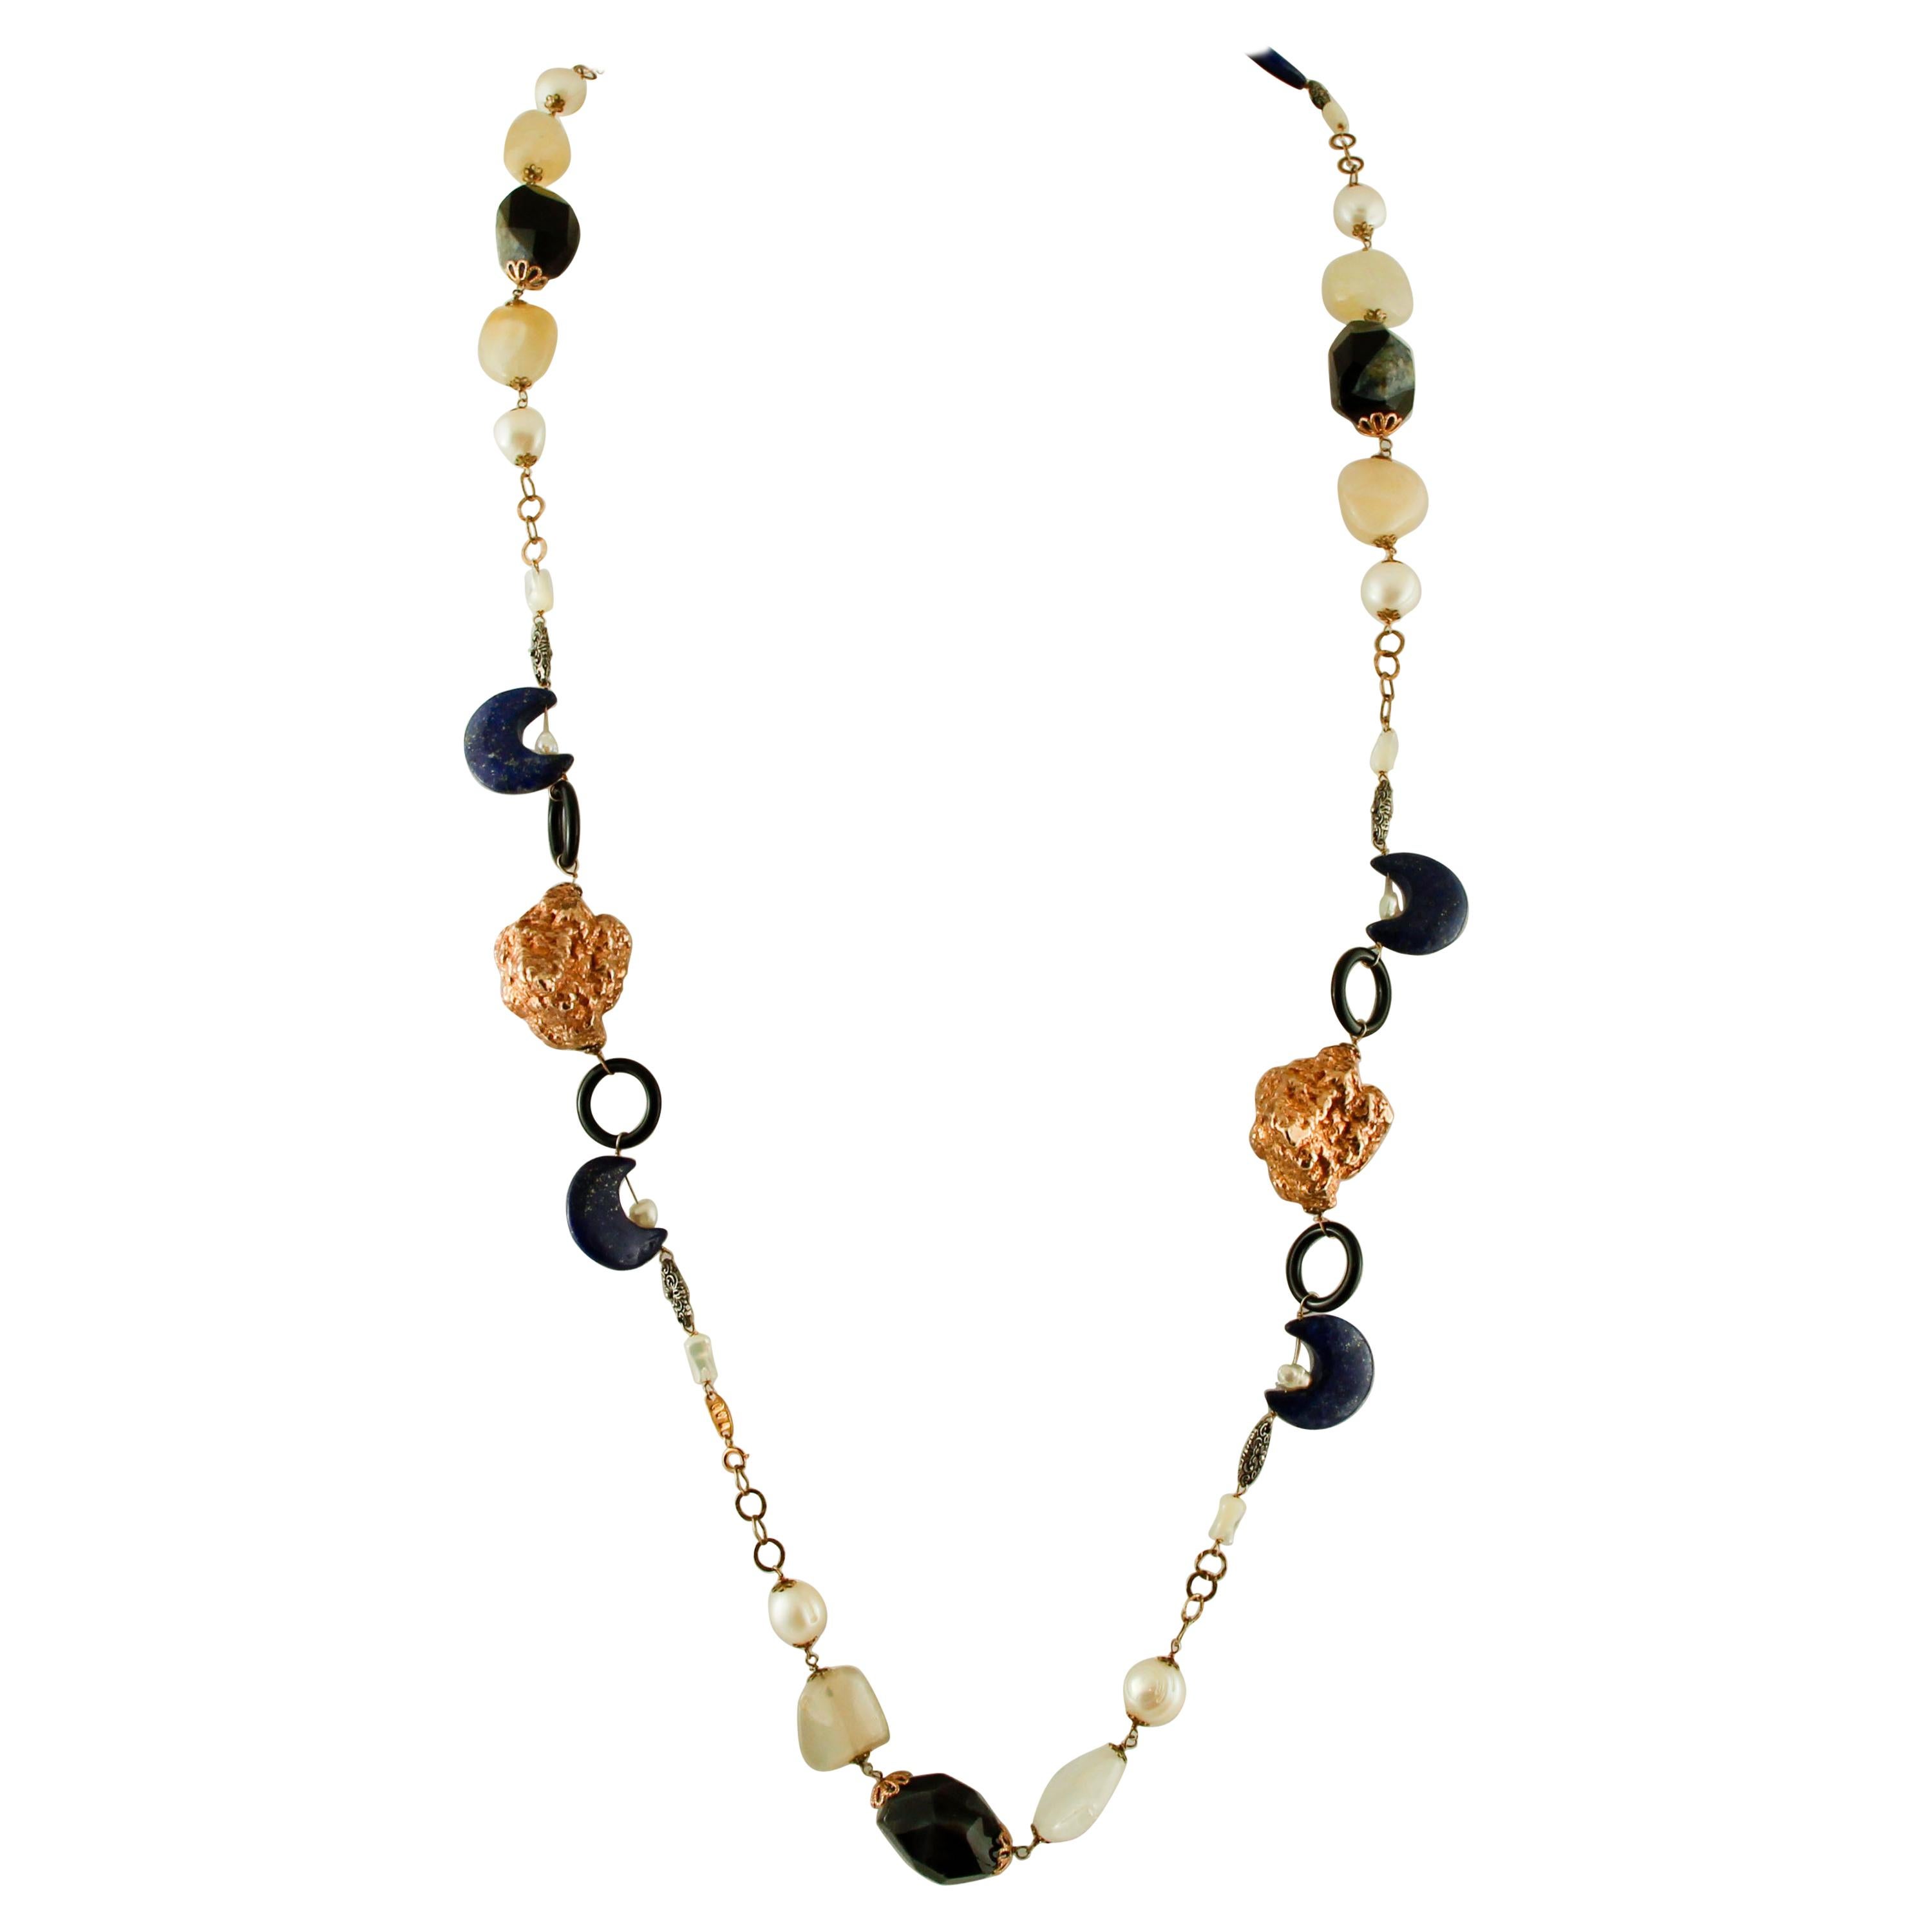 Halskette aus 9 Karat Gold und Silber mit Achat, Lapislazuli, Perle, weißen Steinen, Mondsteinen